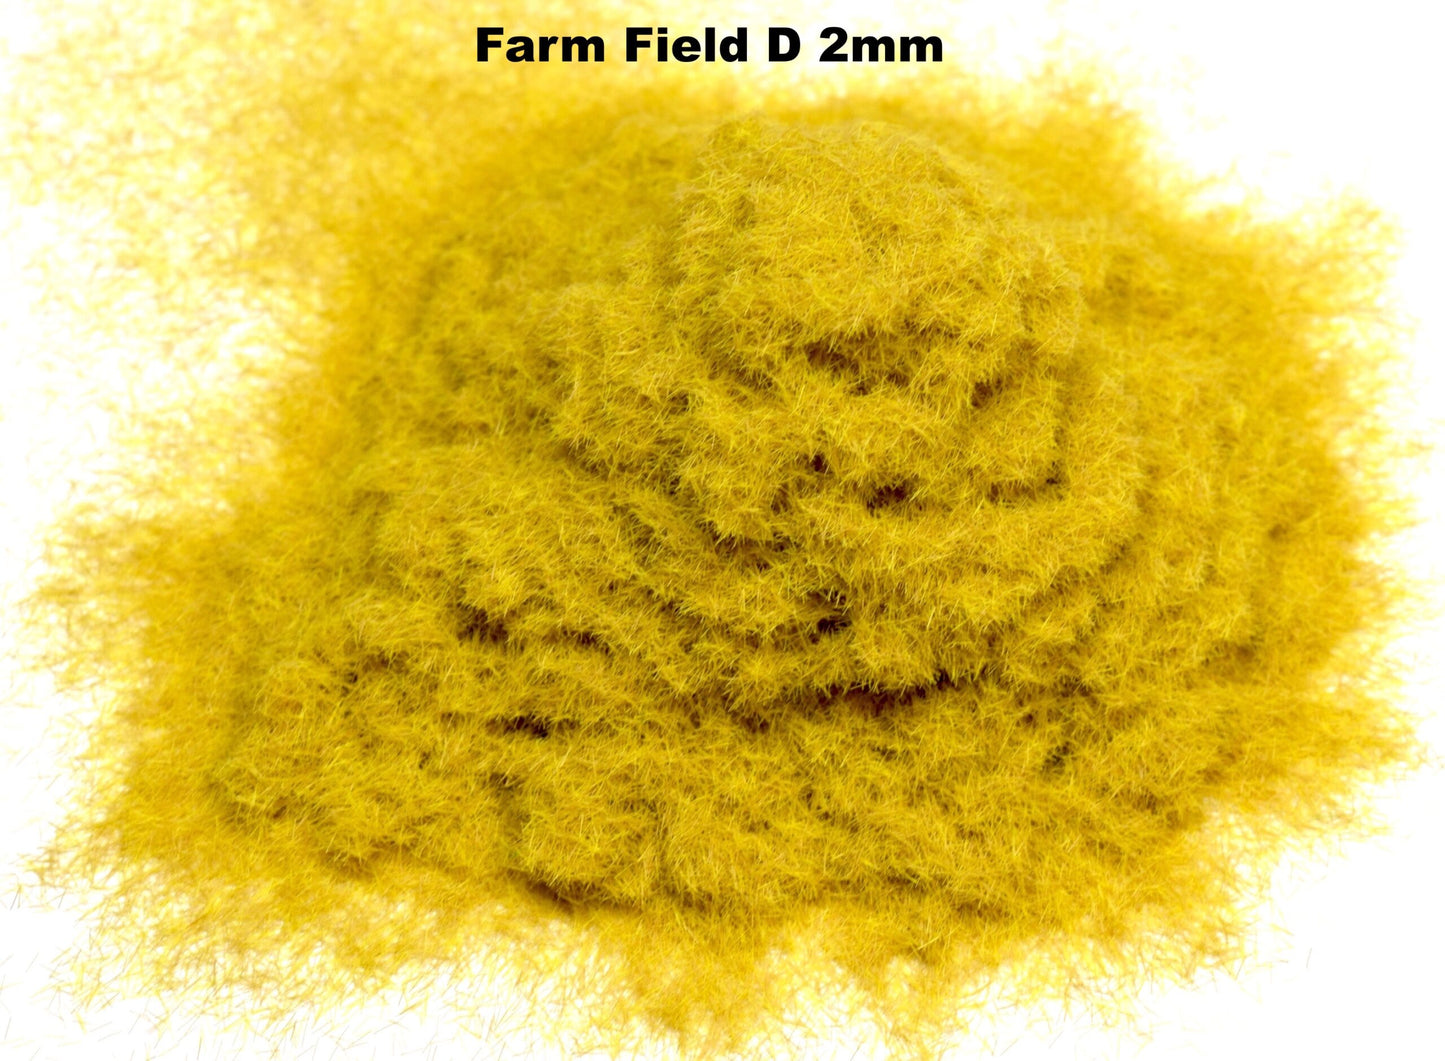 2mm Farm Field D Static Grass